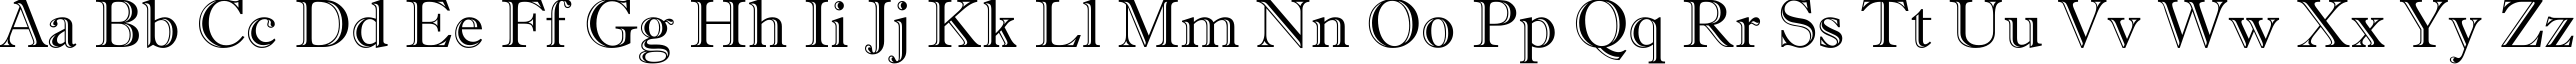 Пример написания английского алфавита шрифтом a_AntiqueGr